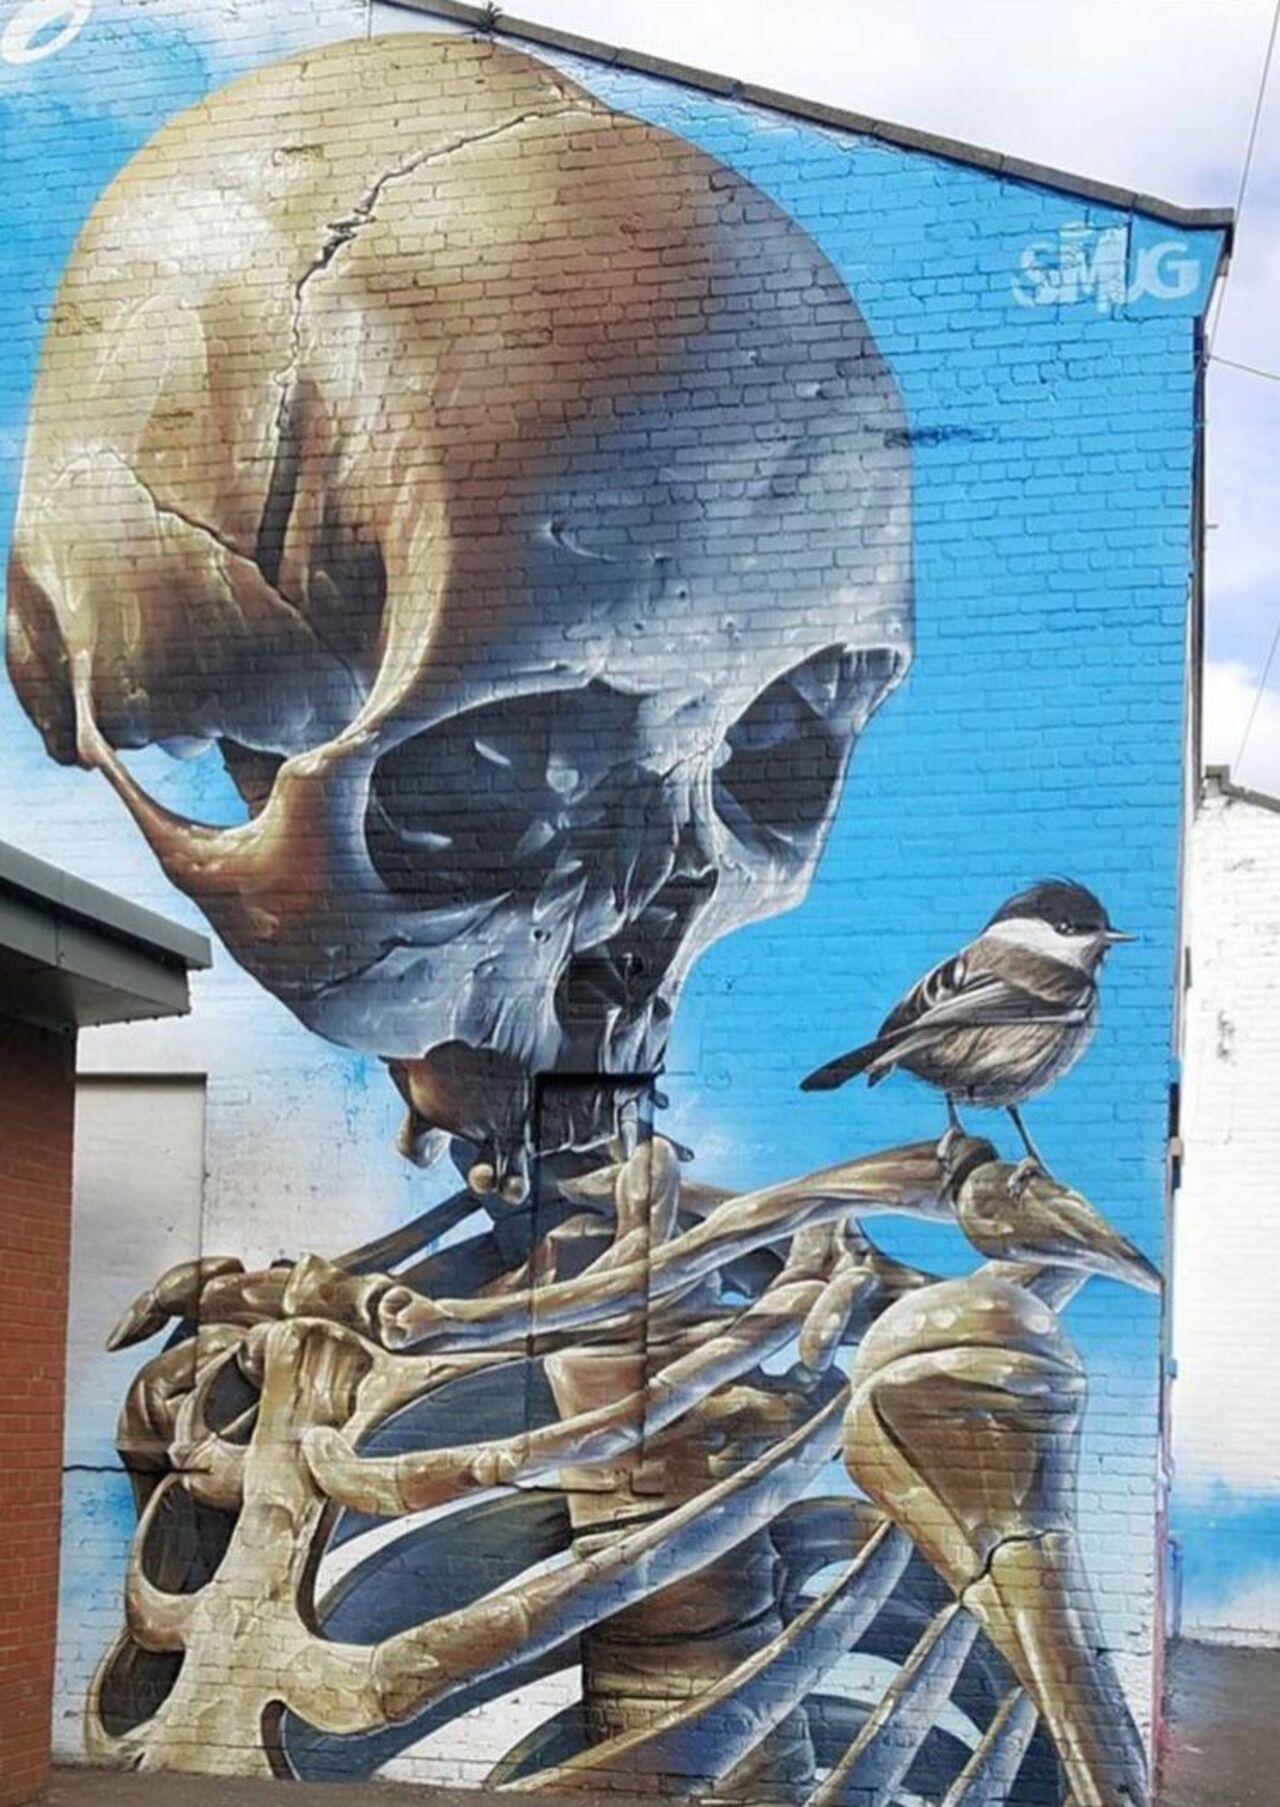 New work by SmugOne in Glasgow, UK #streetart #mural #graffiti #art https://t.co/TldAmBSON2